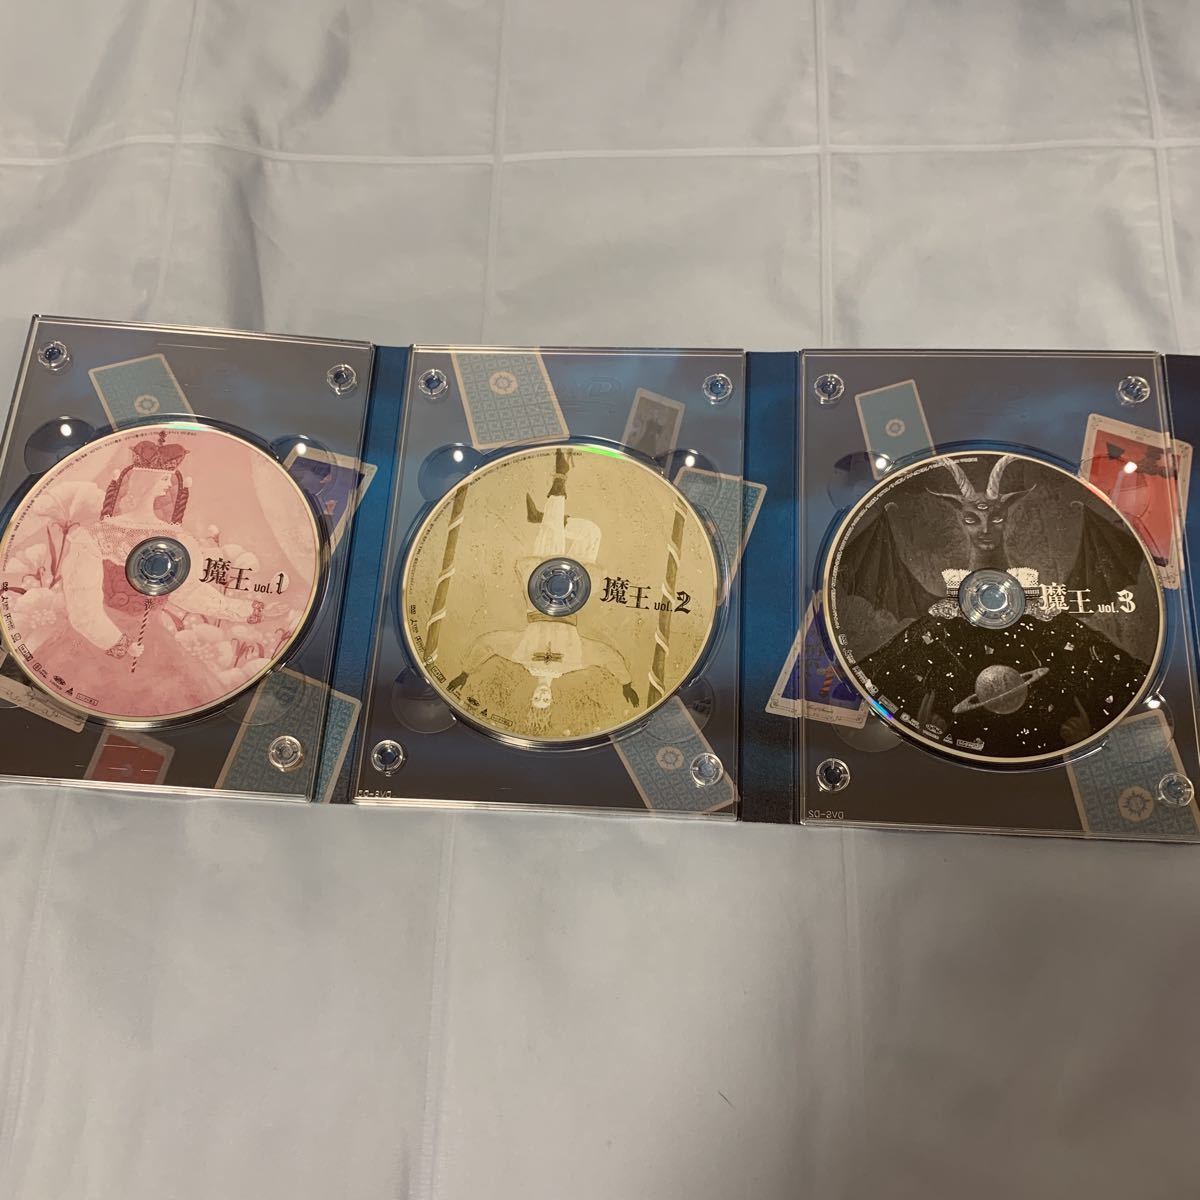 魔王 DVD-BOX 初回生産限定 プレミアム・ブックレット50P封入 2回再生